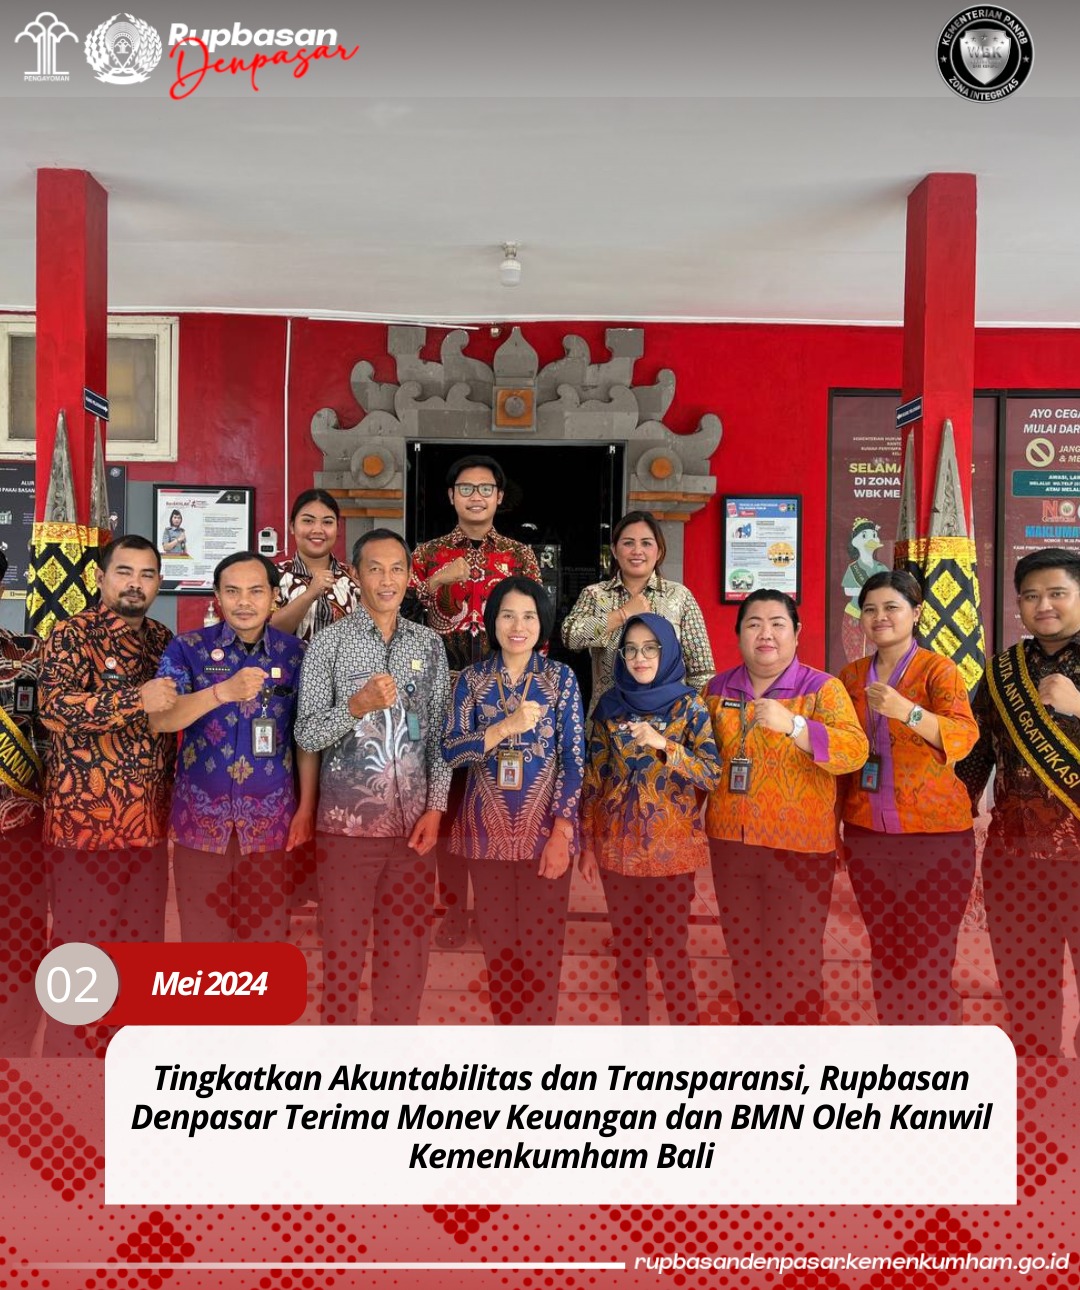 Tingkatkan Akuntabilitas dan Transparansi, Rupbasan Denpasar Terima Monev Keuangan dan BMN Oleh Kanwil Kemenkumham Bali